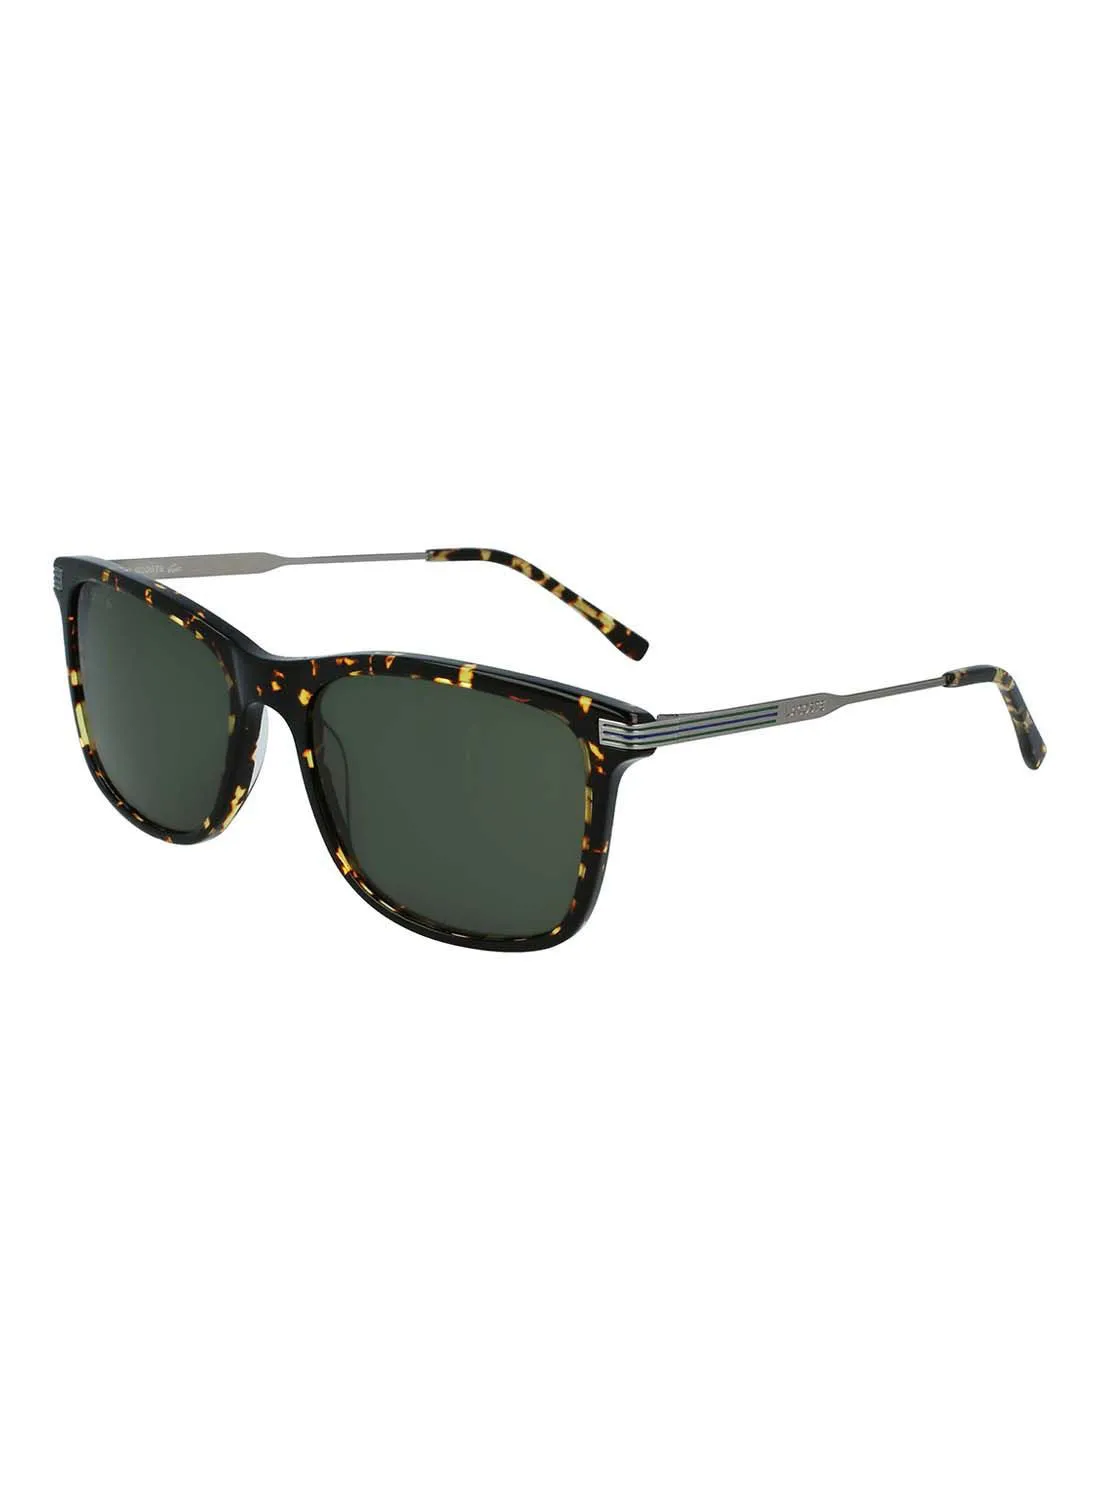 LACOSTE Men's Full Rim ZYL Modified Rectangle Sunglasses  L960S-430-5618